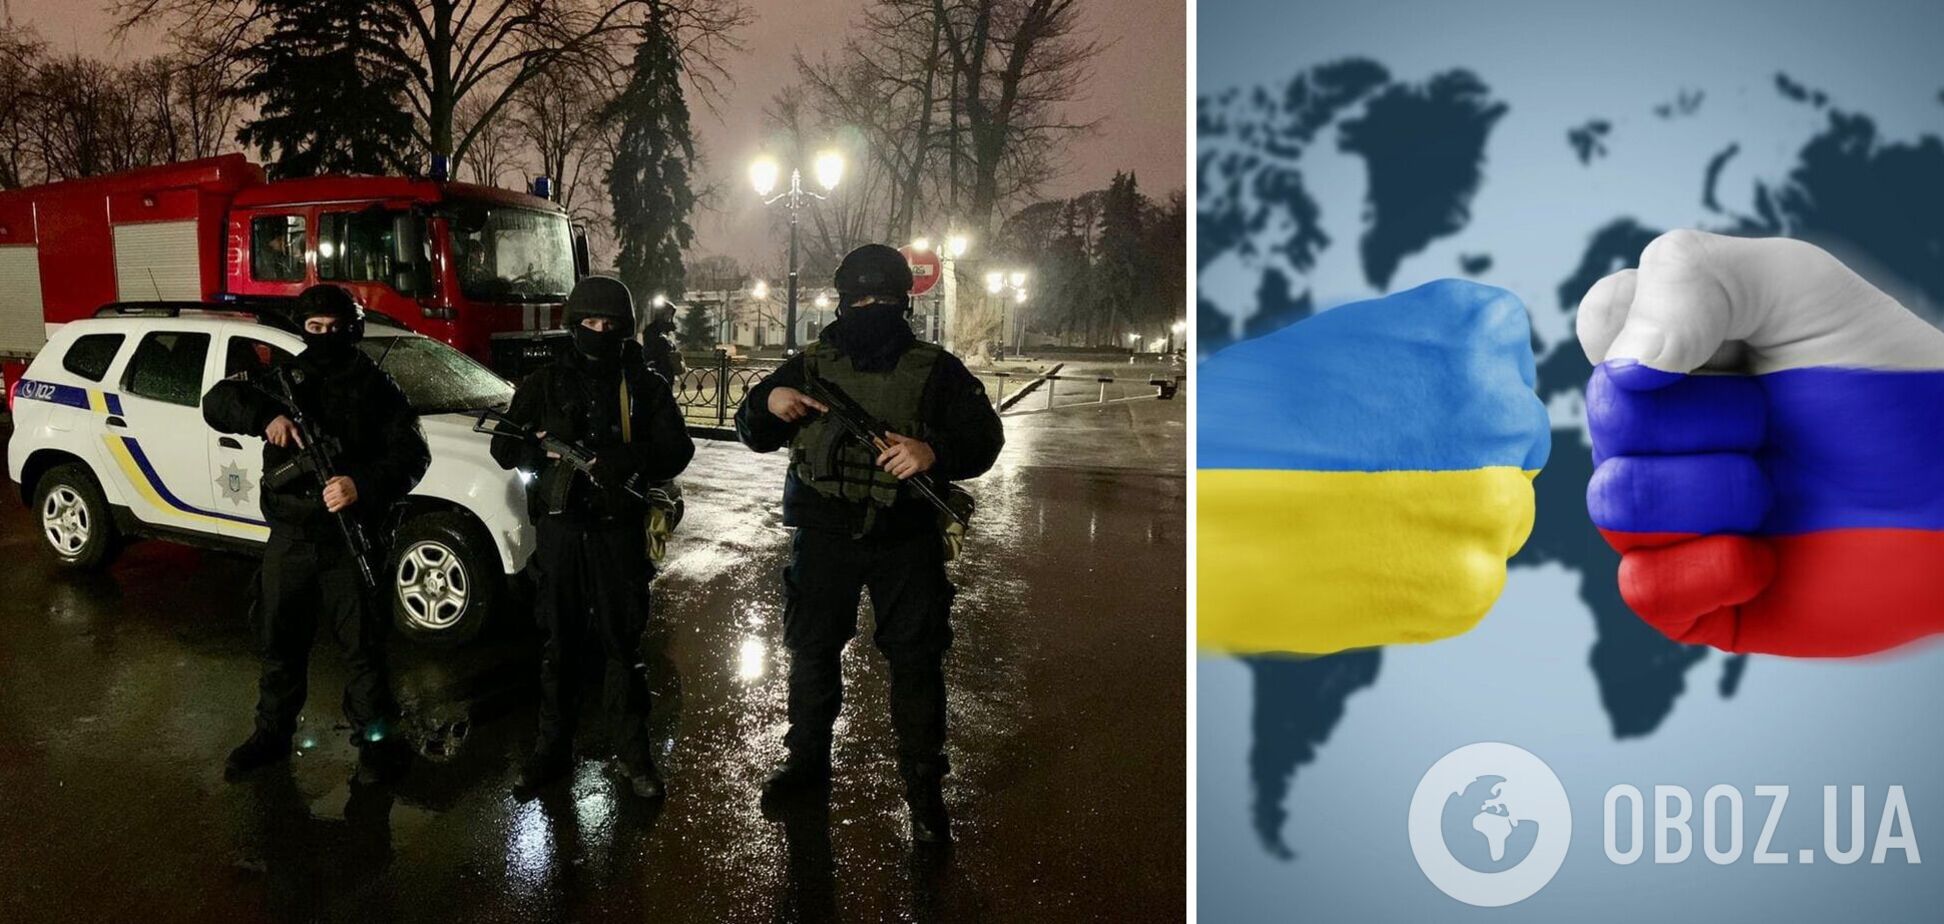 Ситуация контролируемая: в полиции рассказали про обстановку в Киеве на фоне вторжения РФ